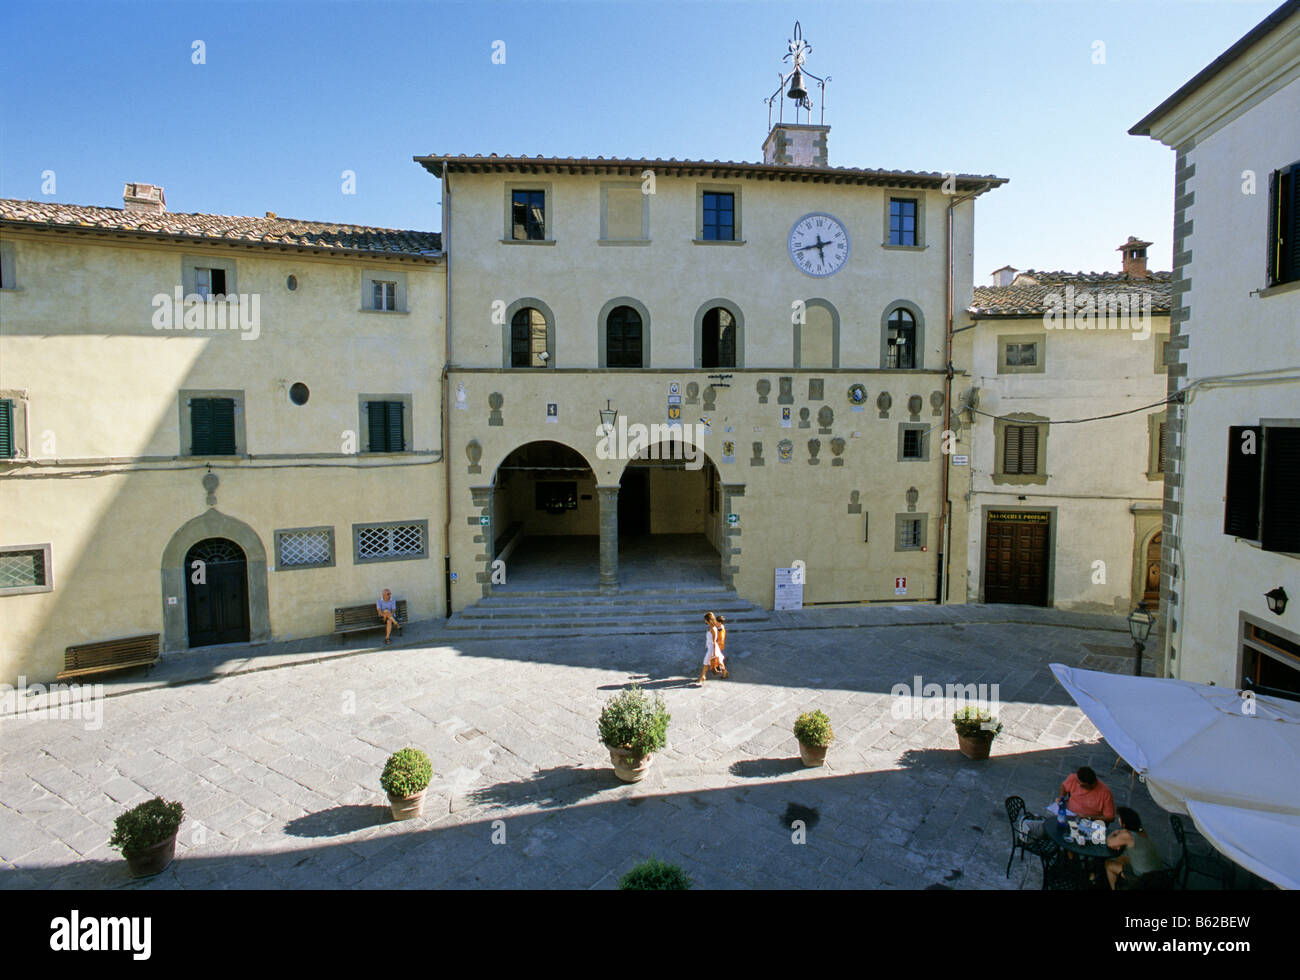 Palazzo del Podestà, Radda in Chianti, Province de Sienne, Toscane, Italie, Europe Banque D'Images